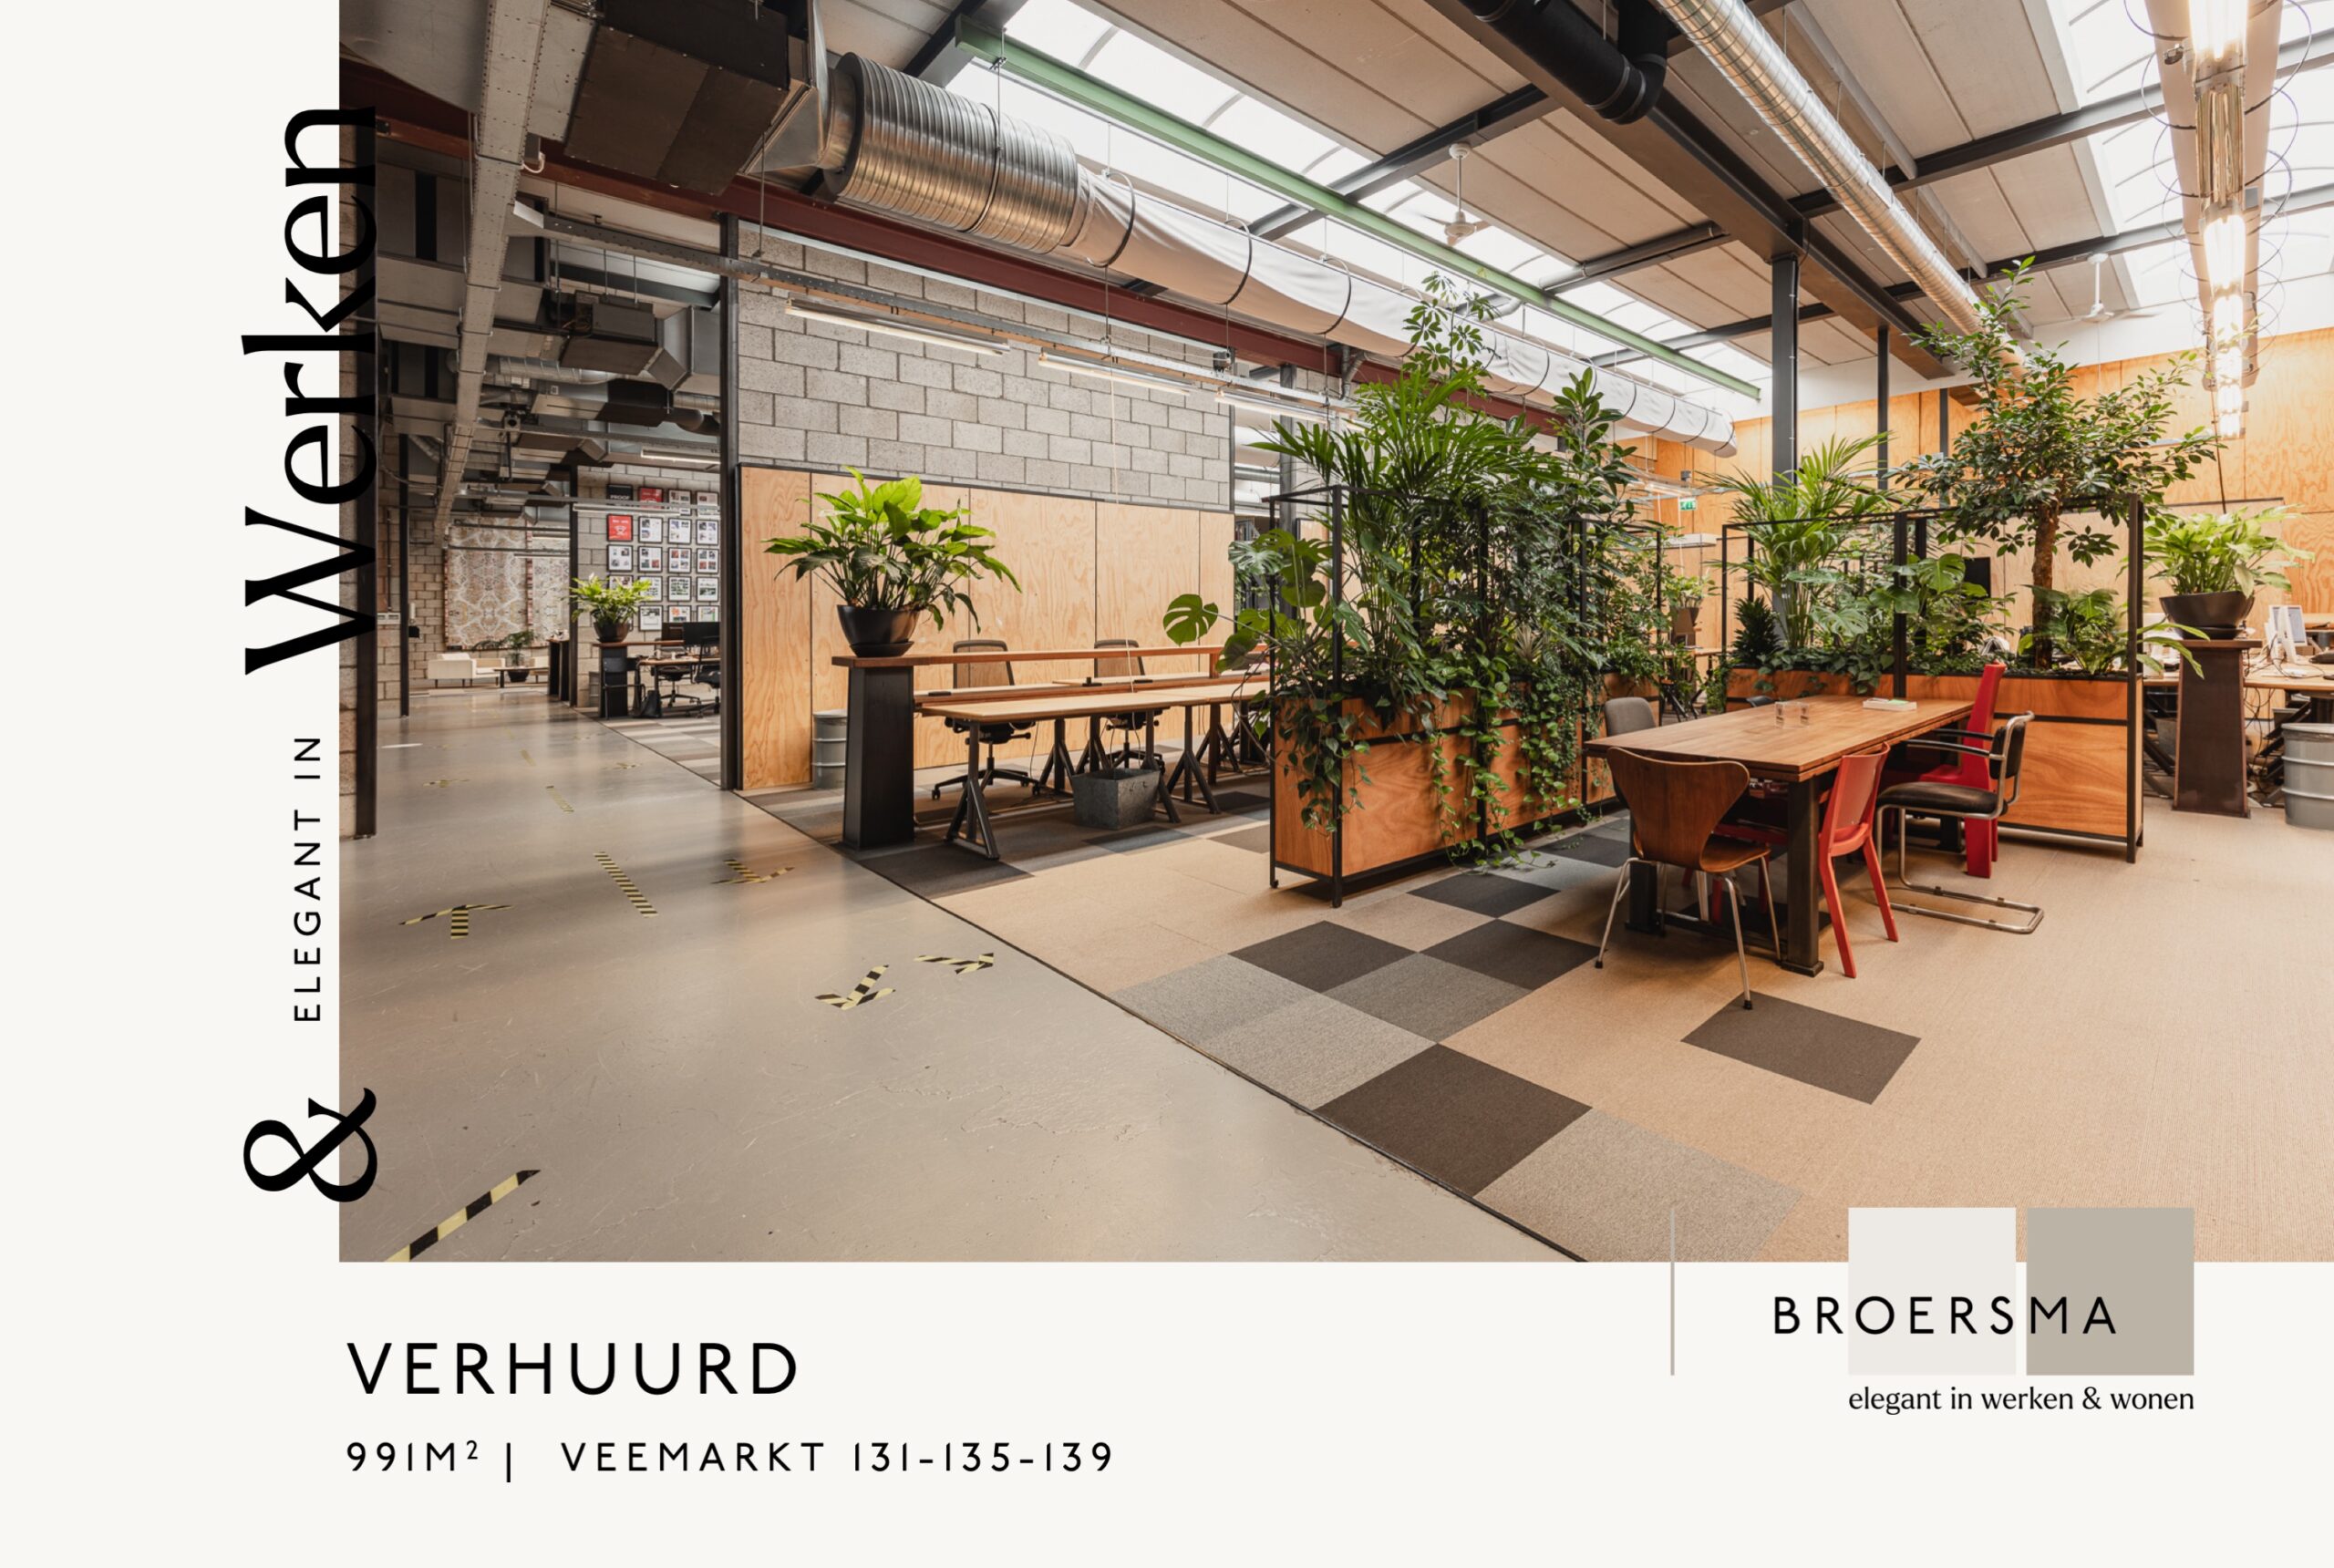 Broersma verhuurd 991 m² bedrijfsruimte op de Veemarkt 131-135-139 te Amsterdam.